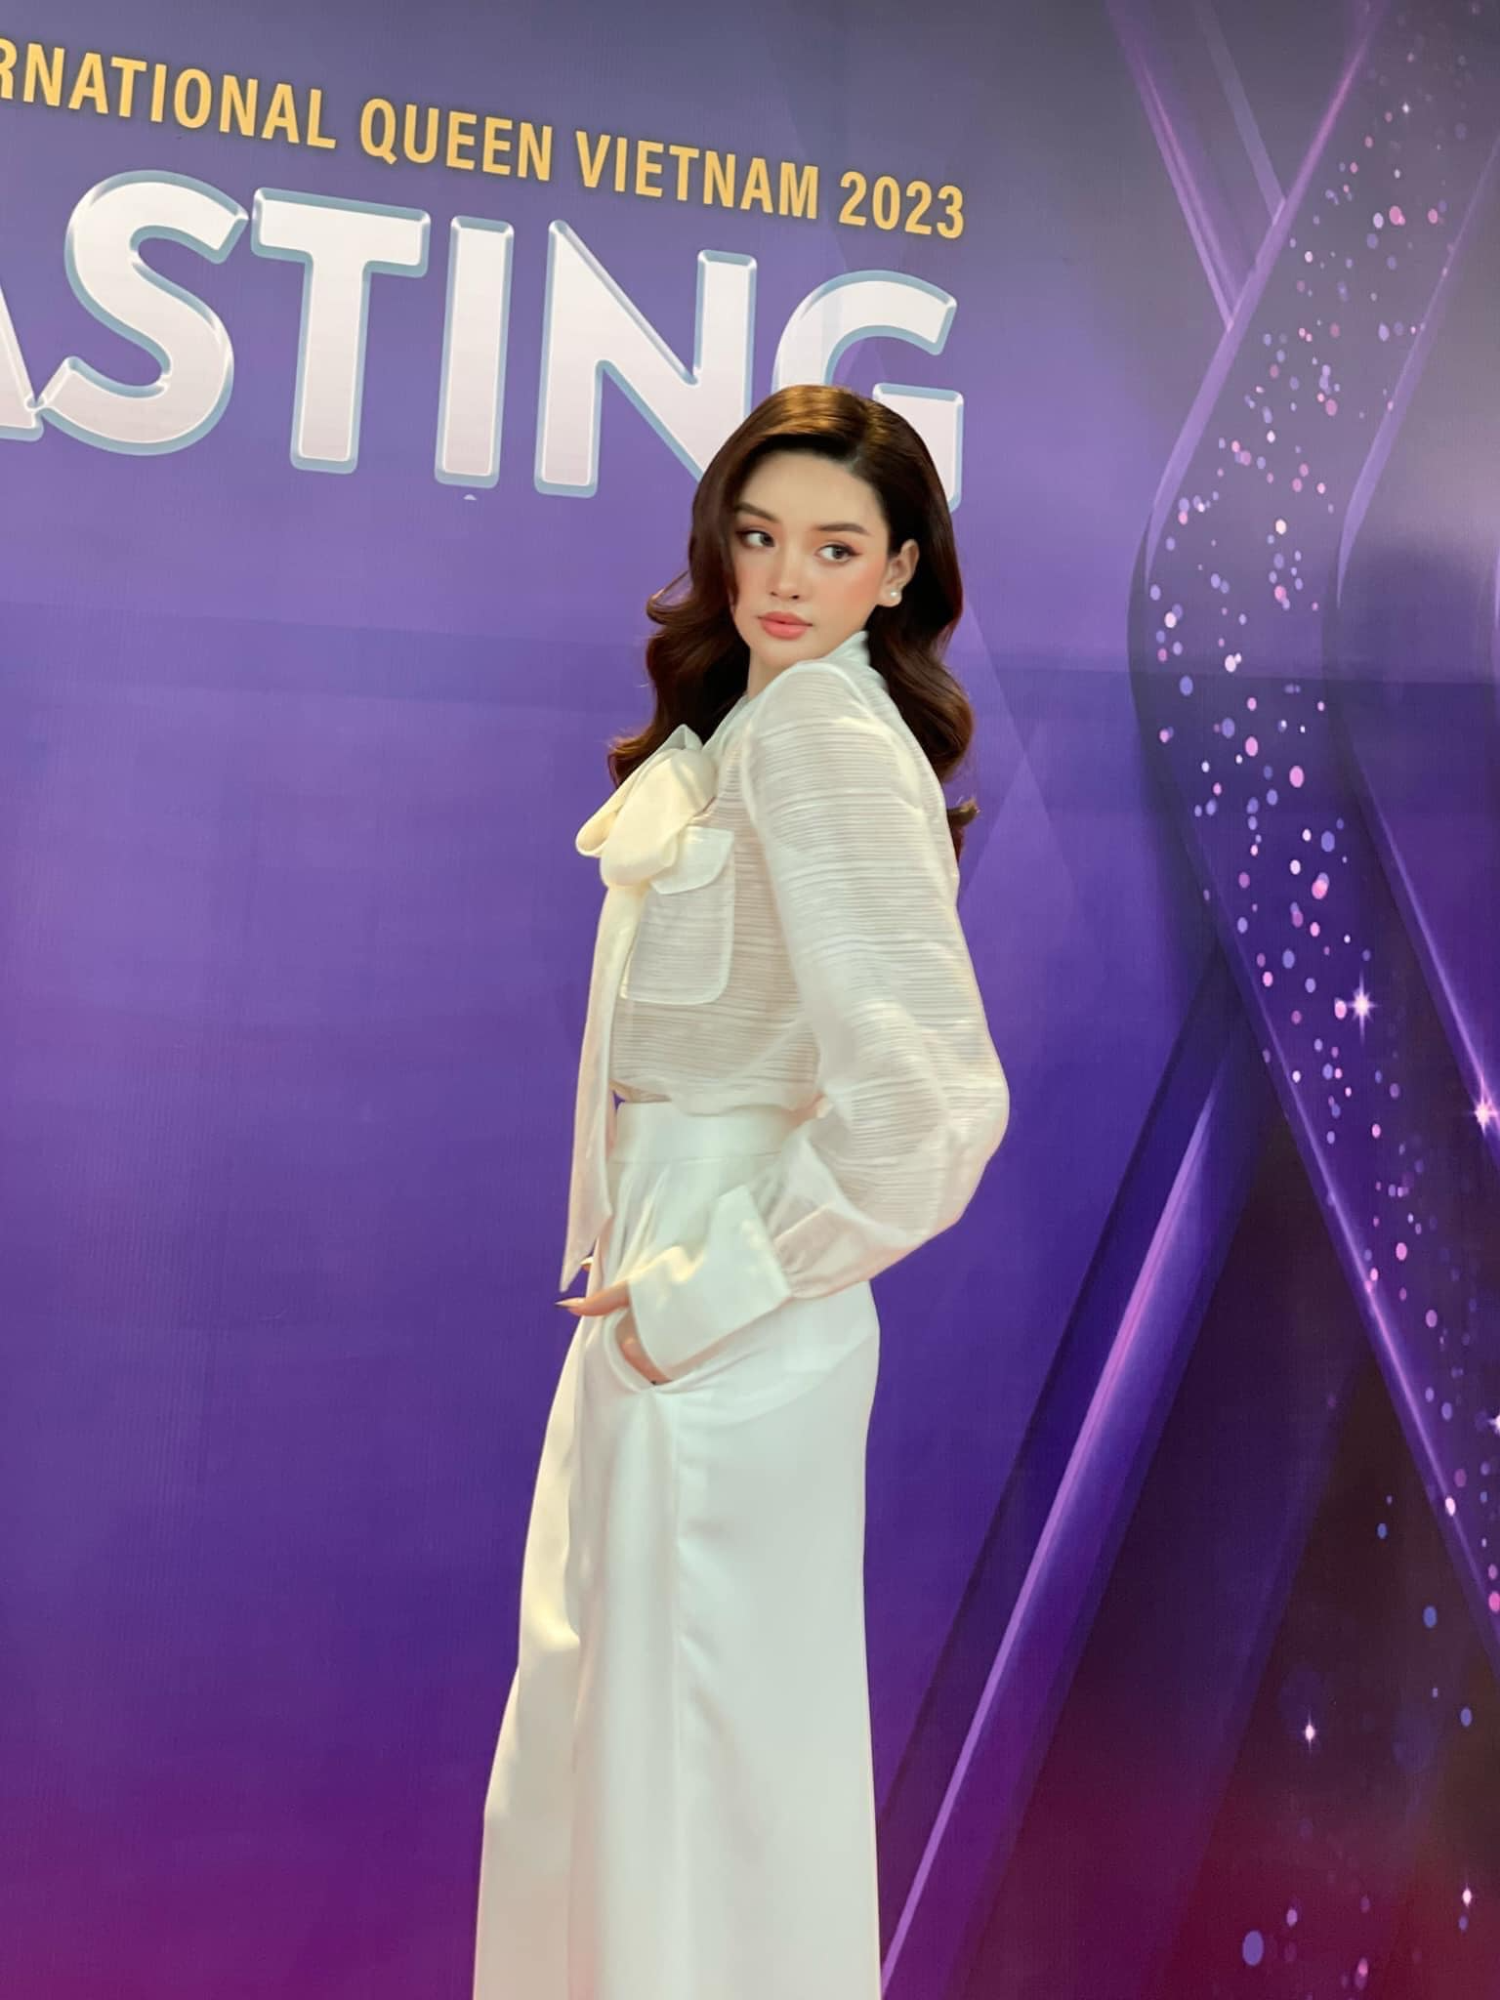 Thí sinh có visual 'siêu phẩm' lộ diện tại Hoa hậu Chuyển giới: Trân Đài thi năm nay chưa chắc thắng - Ảnh 2